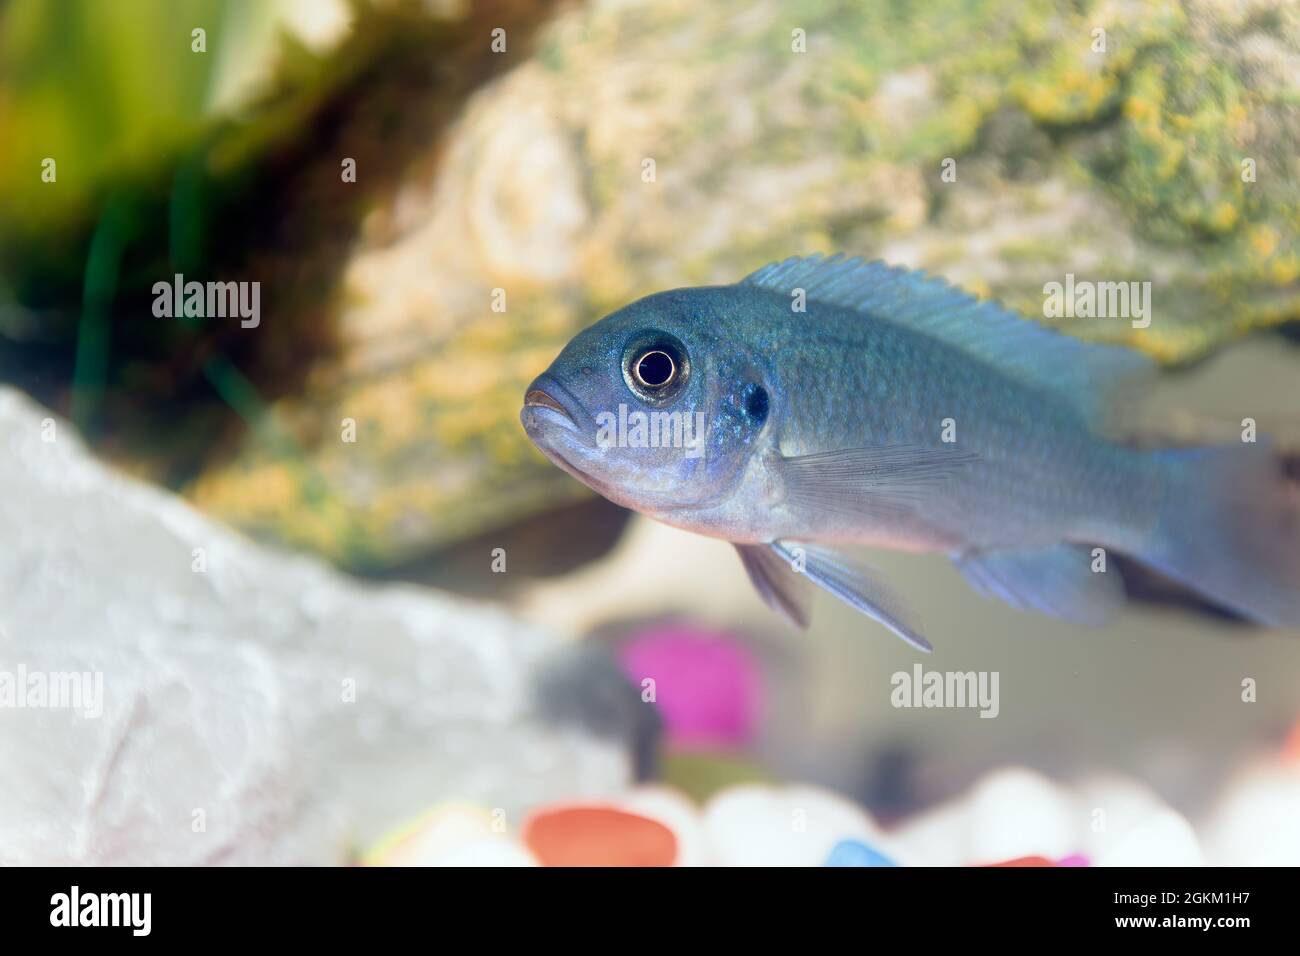 A Blue Malawai Cichlid Juvenile in a home aquarium Stock Photo